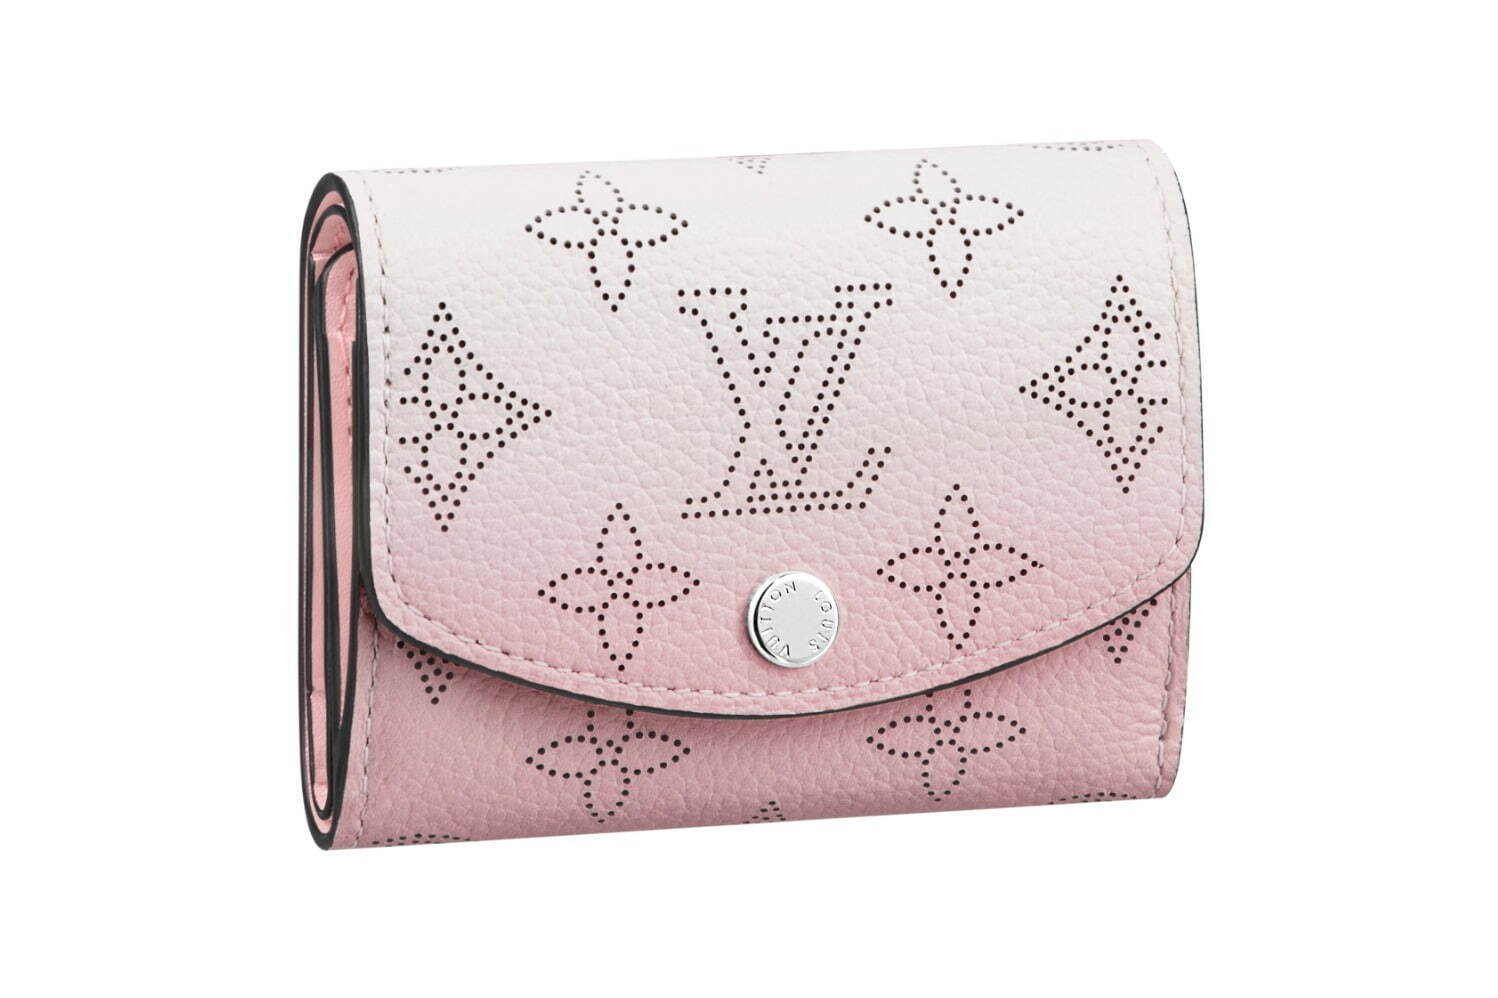 ルイ・ヴィトン“グラデーション”カラーのミニ財布、パステルピンク